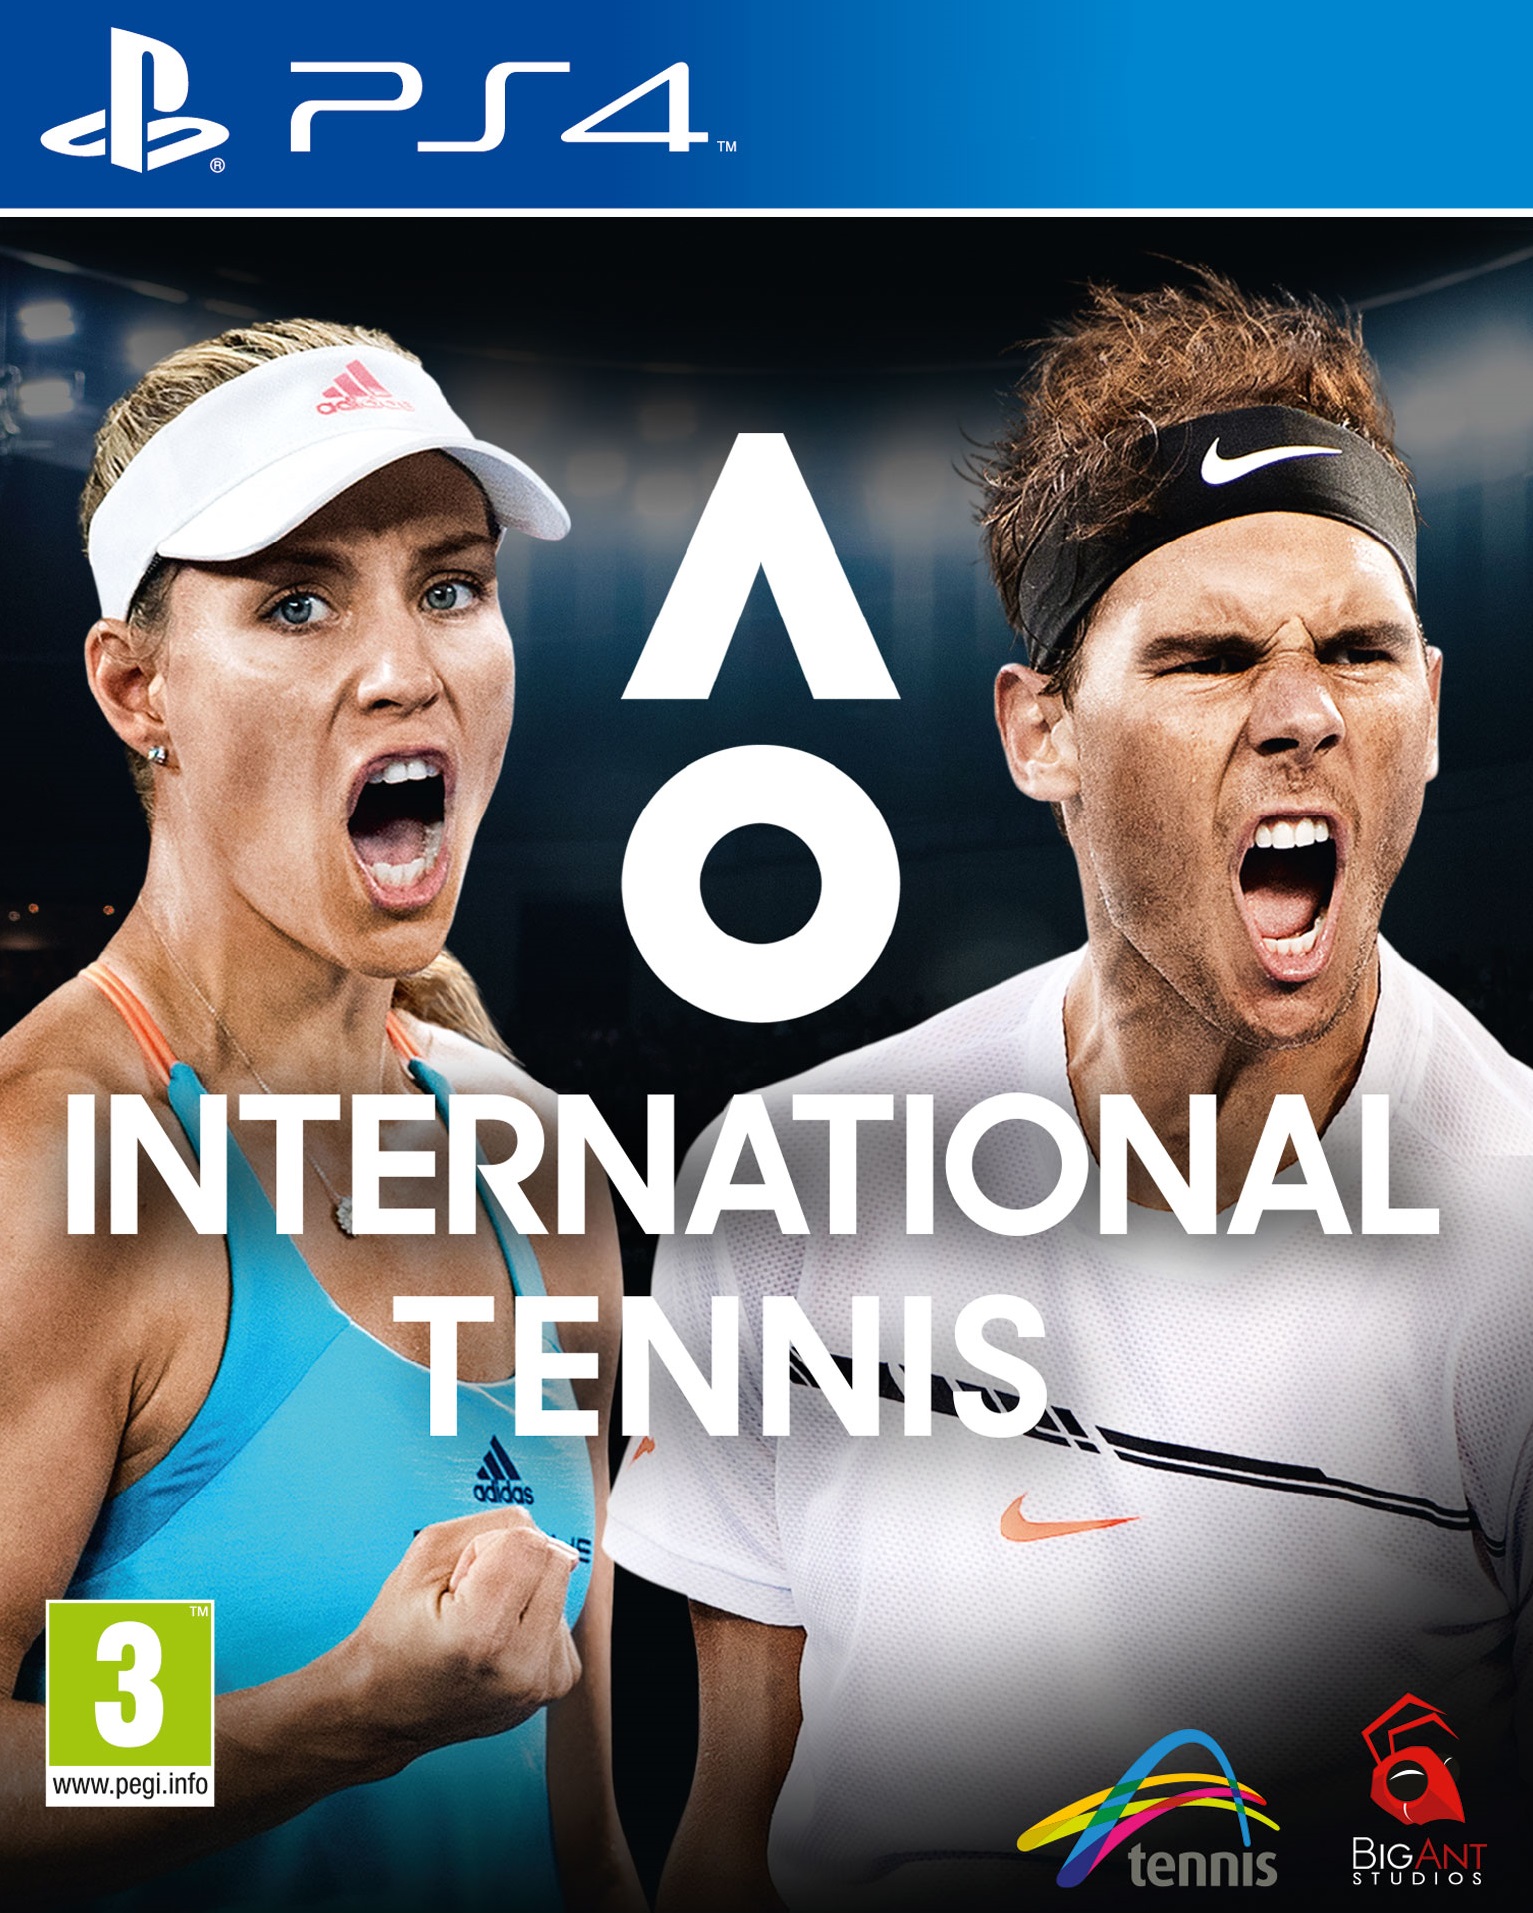 AO Tennis